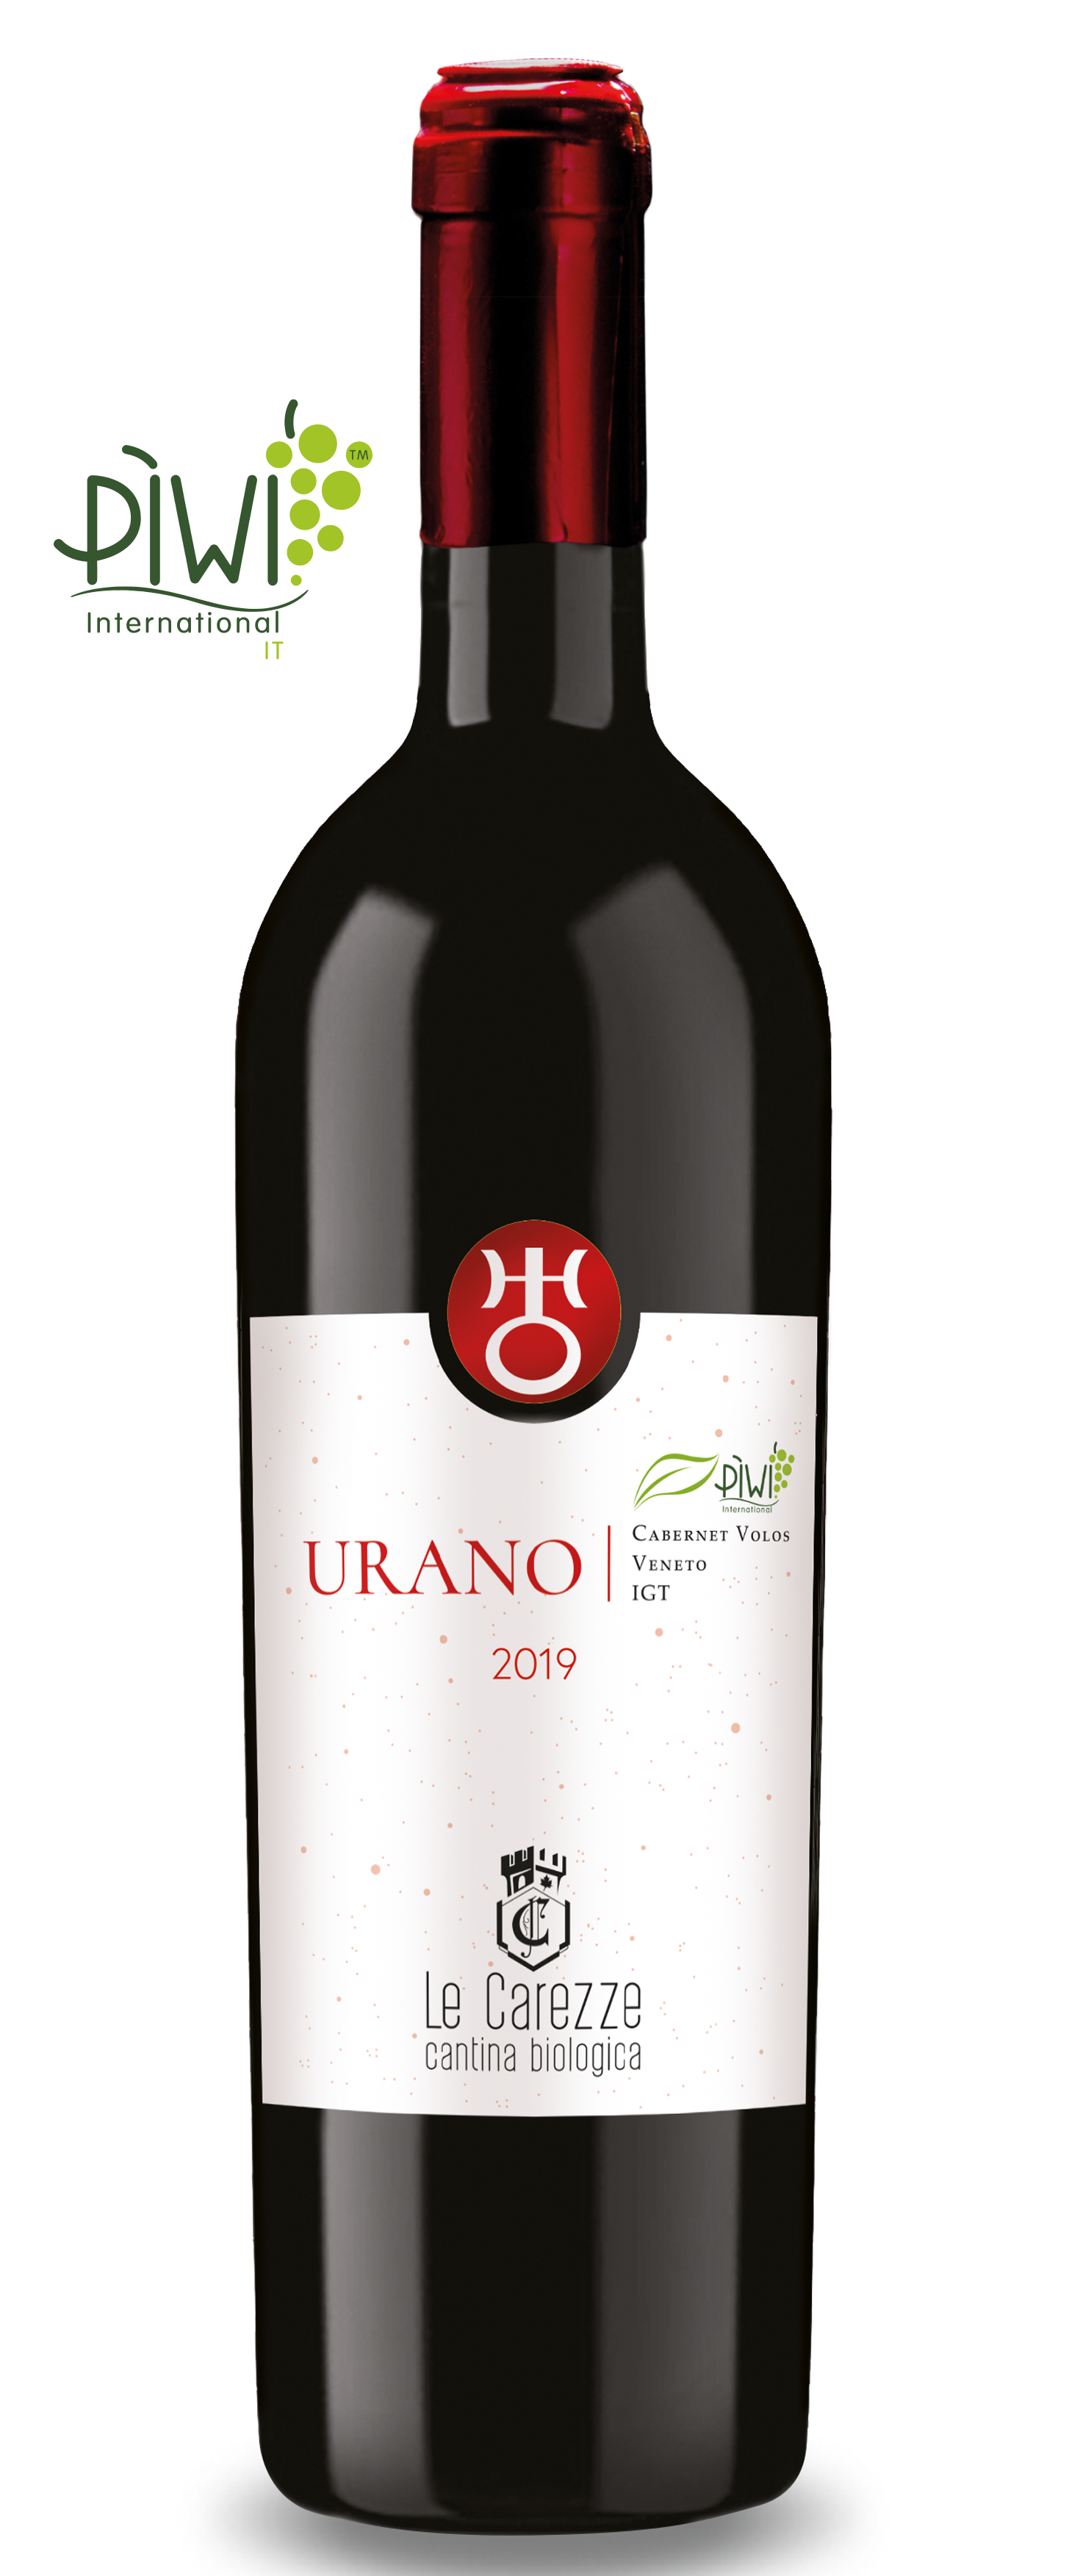 Bottiglia di vino Urano Cabernet Volos 2019